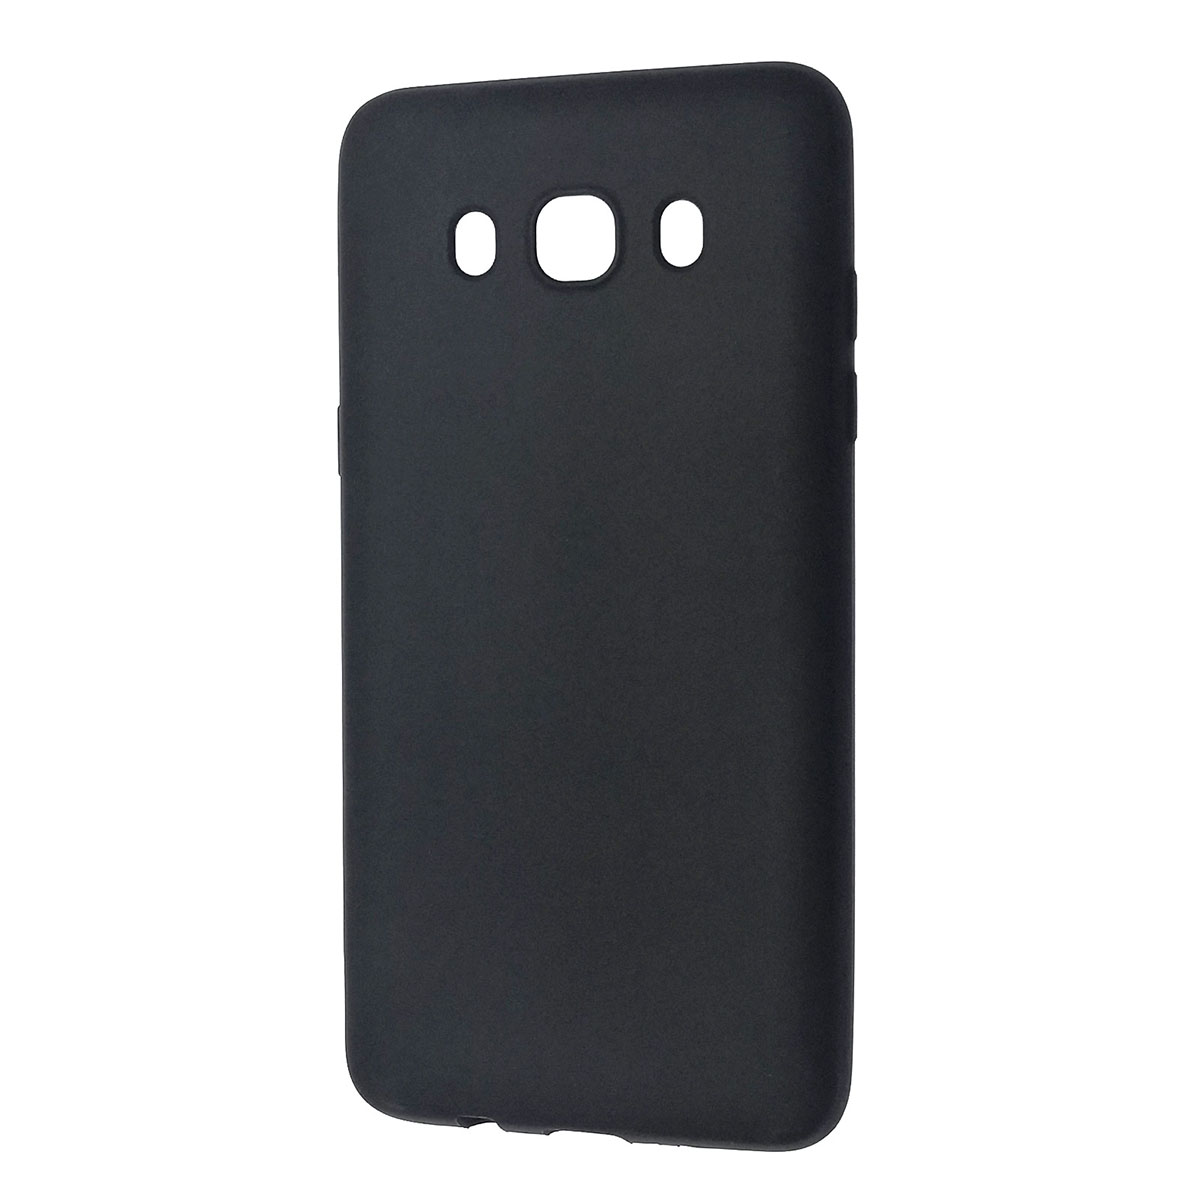 Чехол накладка BEST для SAMSUNG Galaxy J5 2016 (SM-J510), силикон, матовый, цвет черный.